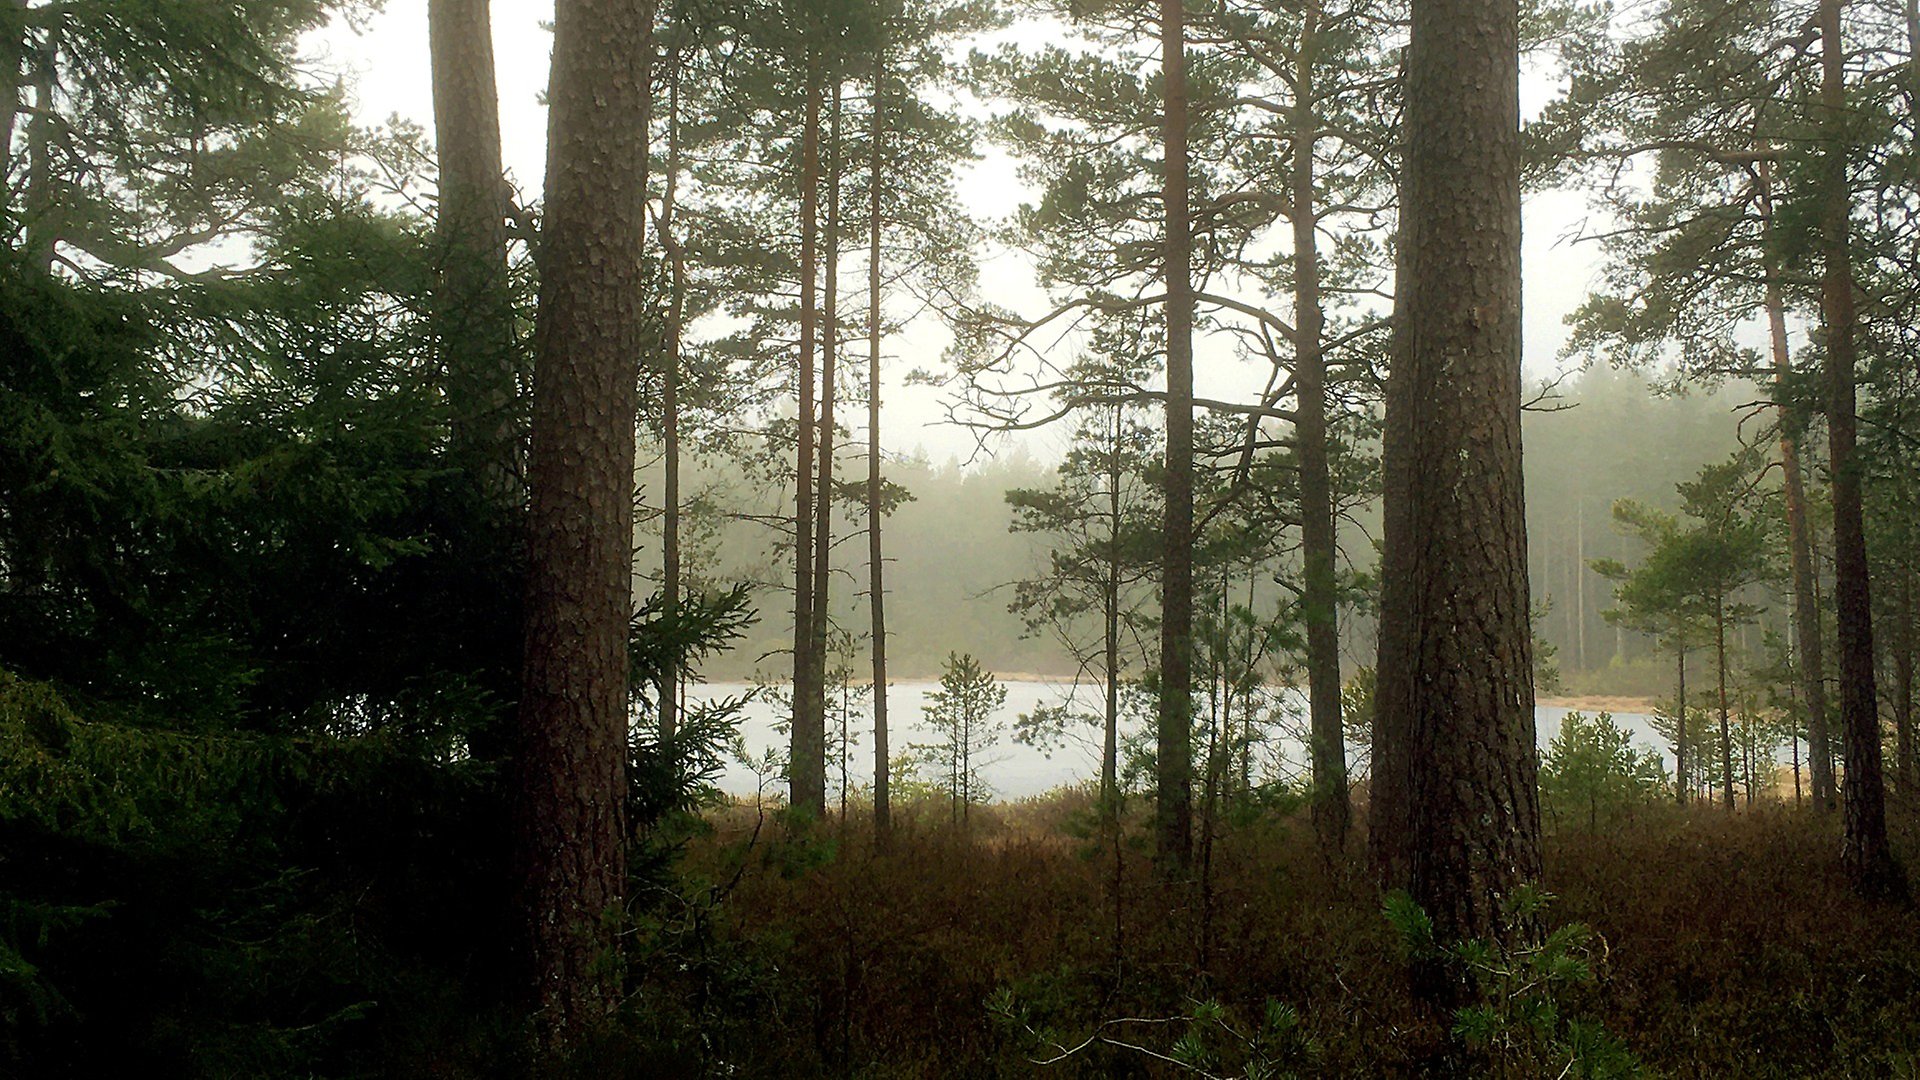 En skog i dimmigt väder. Flera träd i skuggigt ljus och vatten i bakgrunden.